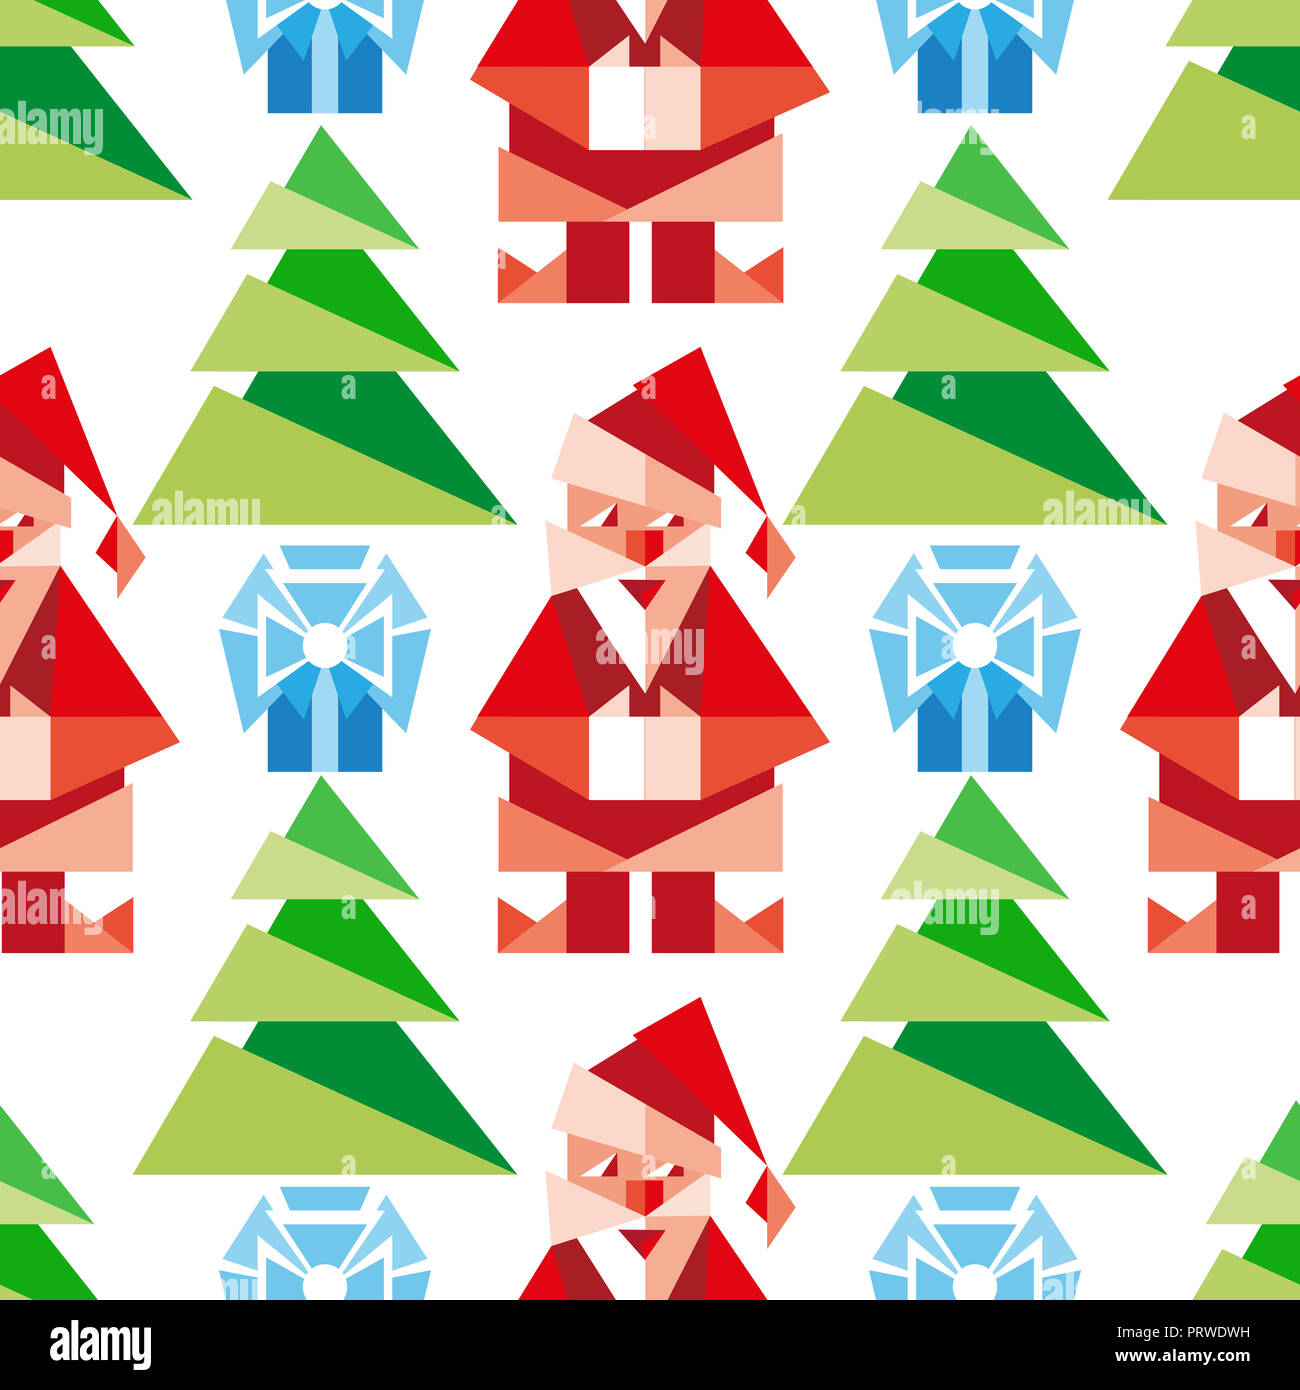 I Simboli Del Natale.Modello Senza Soluzione Di Continuita Con I Simboli Del Natale In Stile Cartoon Sfondo Di Vacanza Foto Stock Alamy